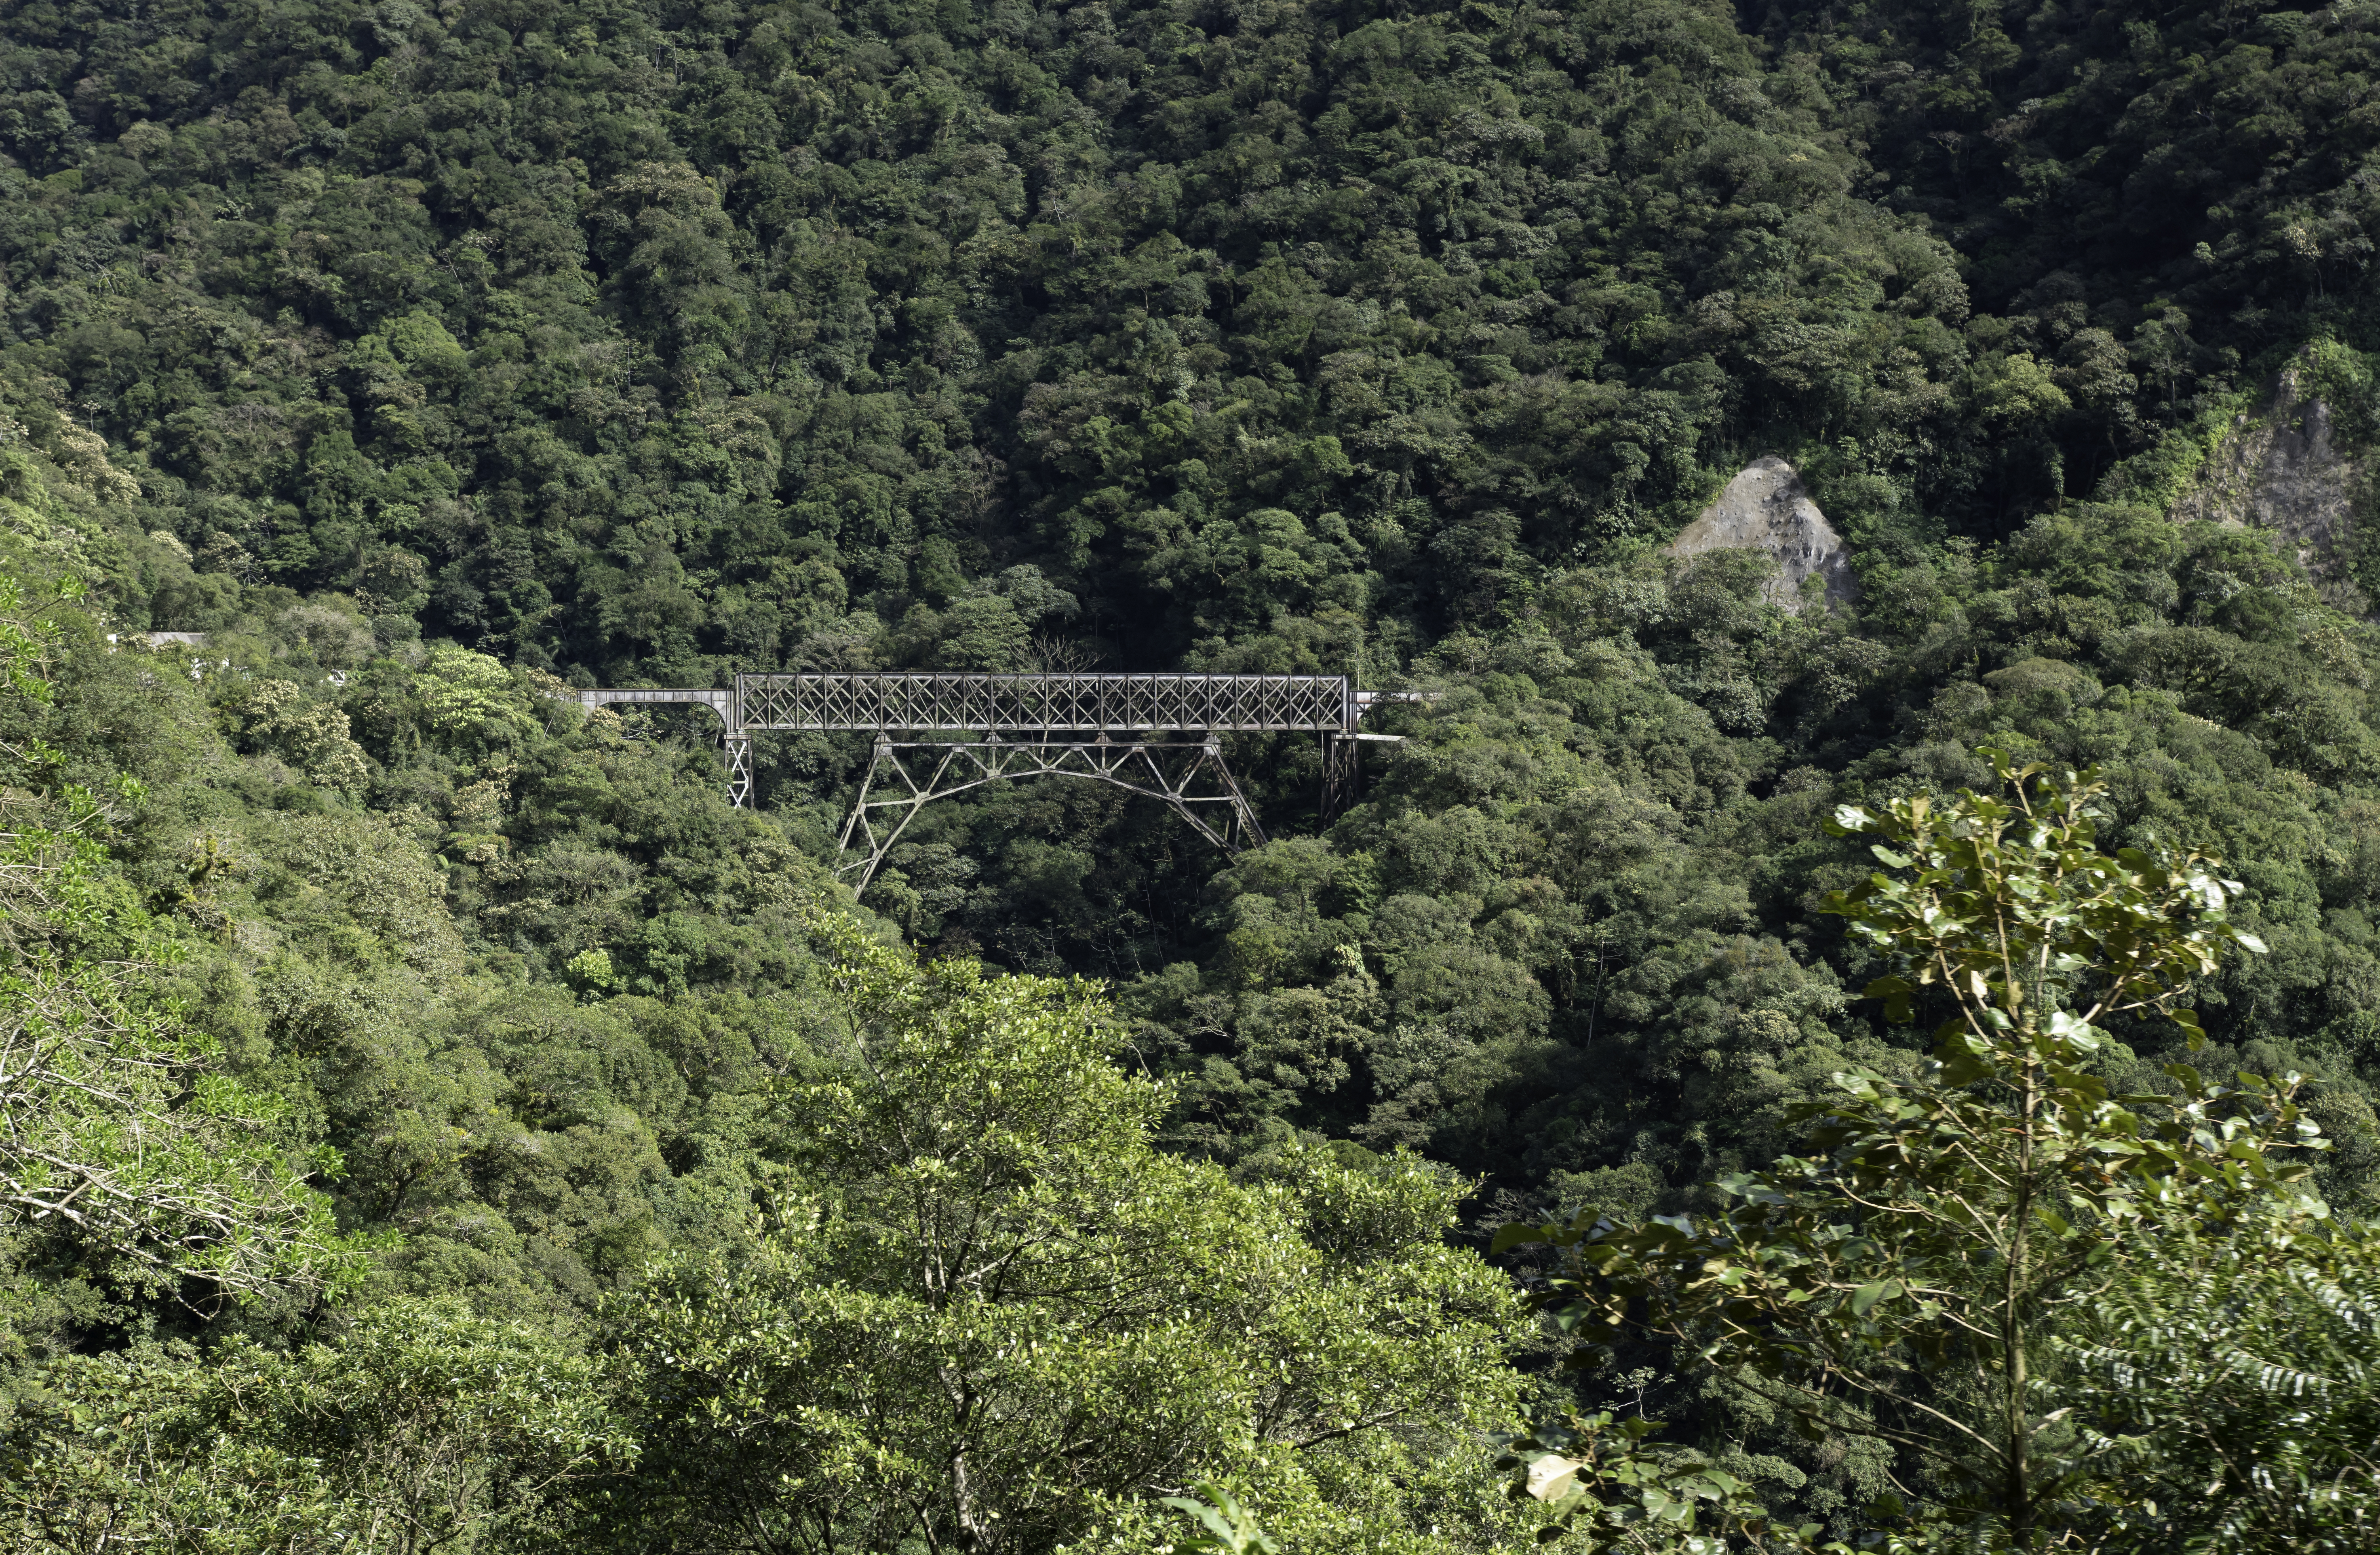 A fotografia colorida mostra uma ponte de metal com um arco de sustentação em meio a montanhas preenchidas com mata verde